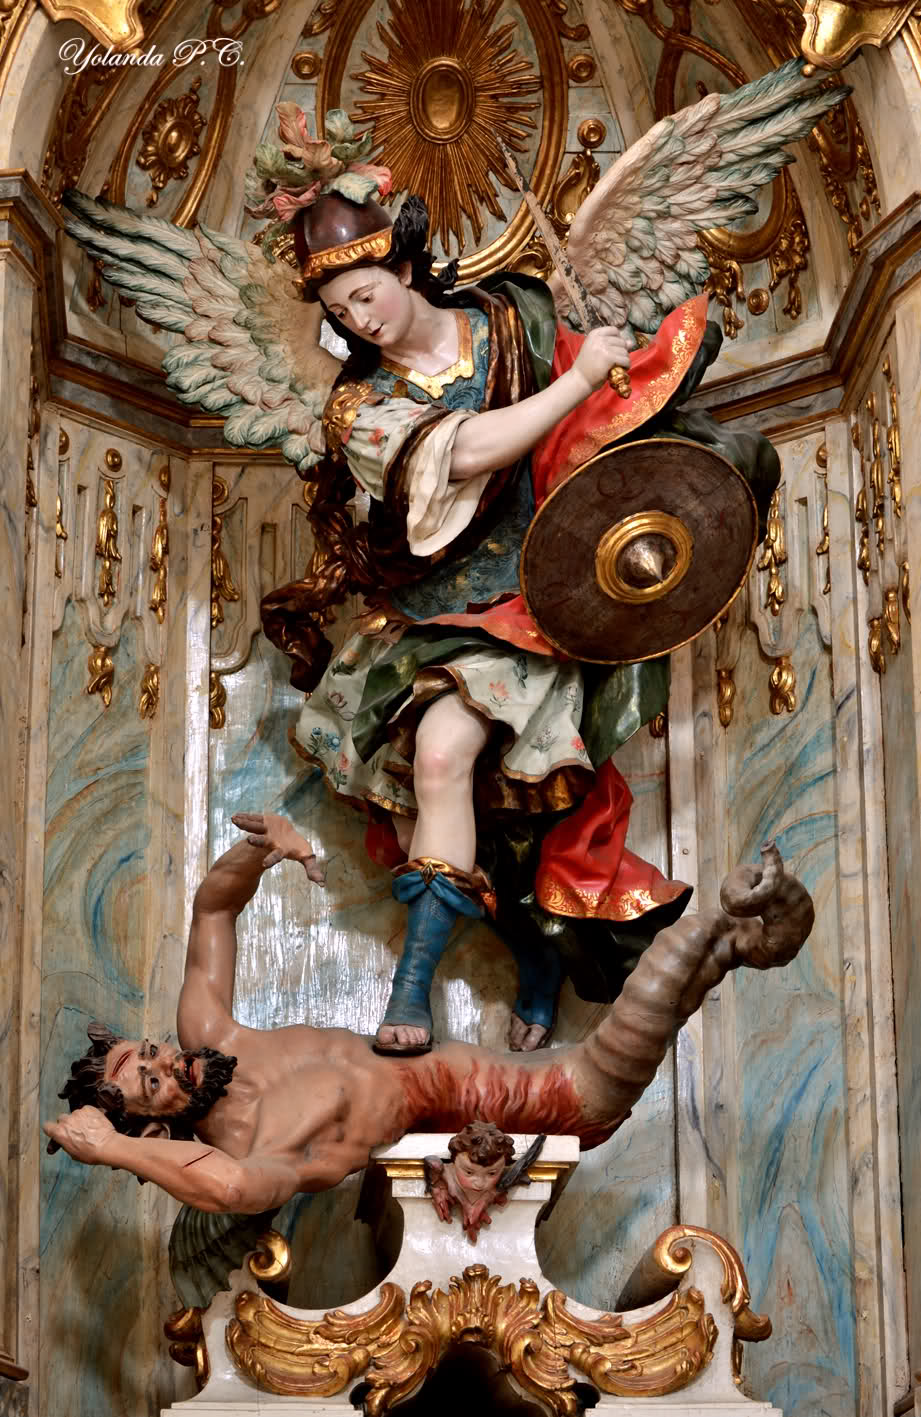 San Miguel Arcangel, General de los Ejercitos  del Cielo.
Protector de Naciones,